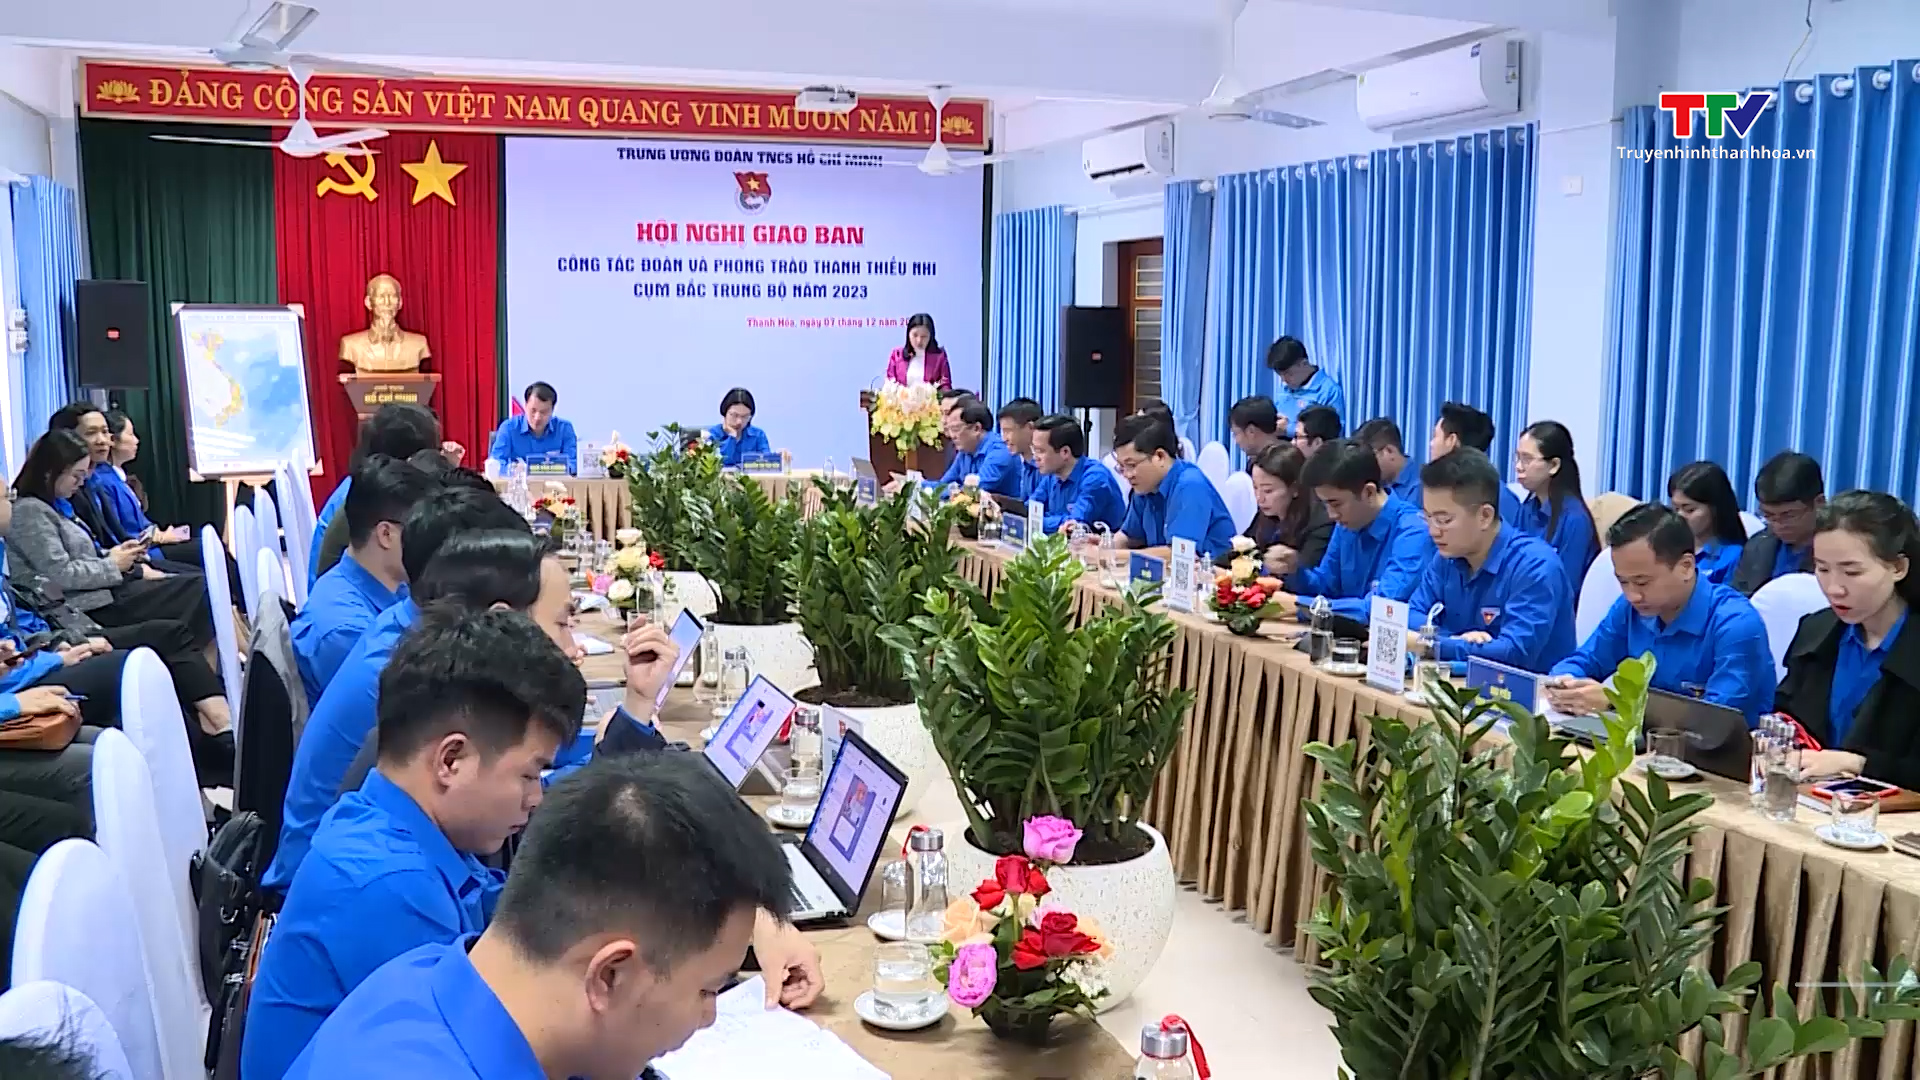 Hội nghị giao ban công tác Đoàn và phong trào thanh thiếu nhi cụm Bắc Trung Bộ- Ảnh 1.